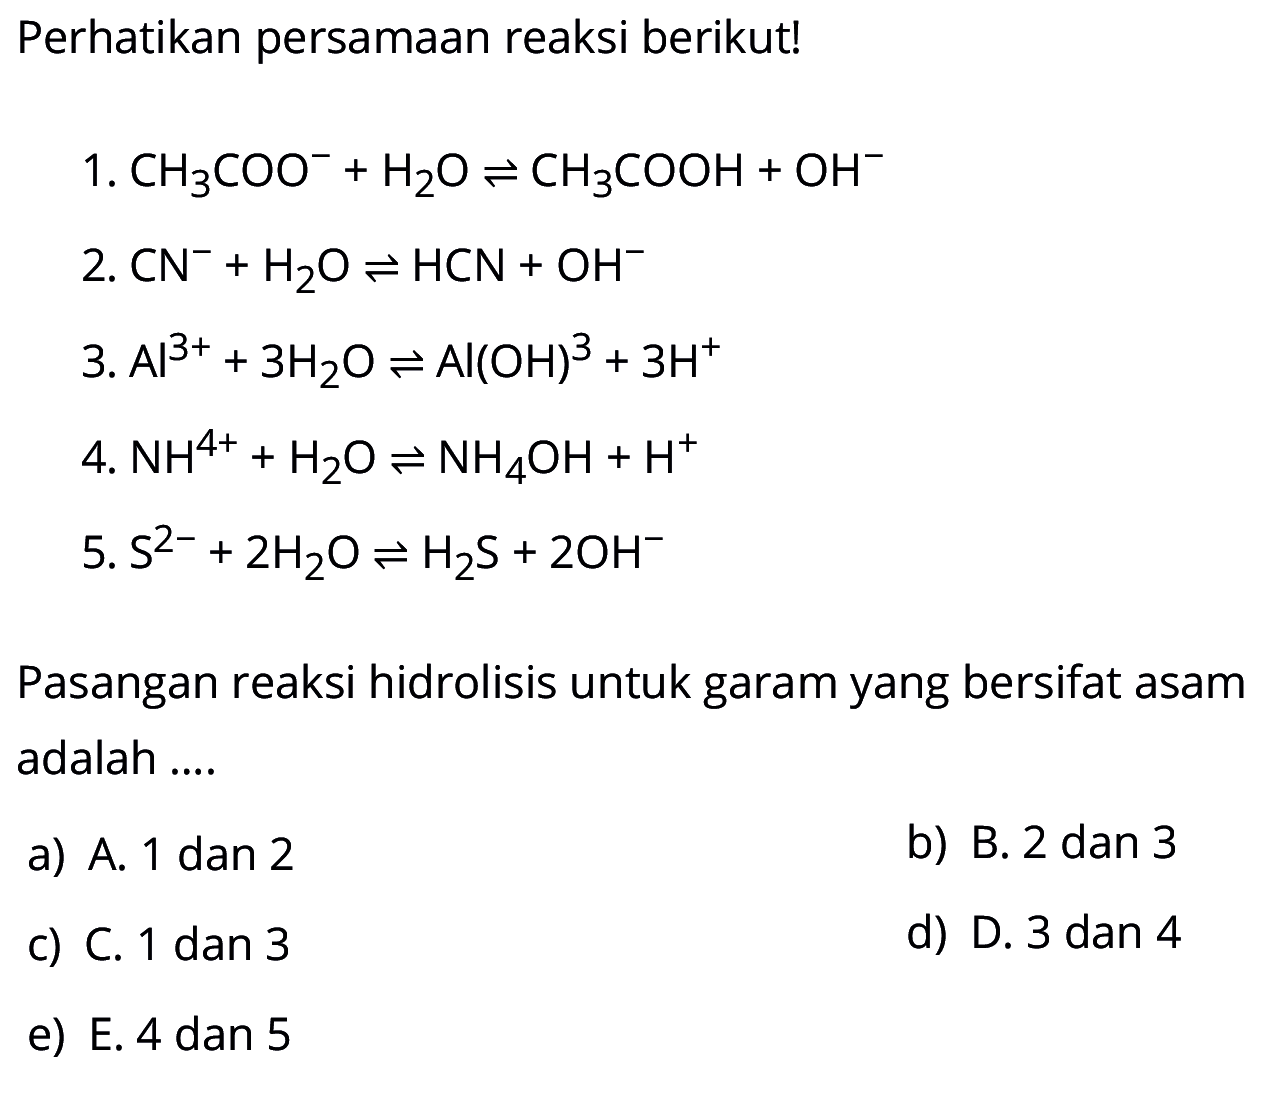 Perhatikan persamaan reaksi berikut!
1.  CH3COO^-+H2O <=> CH3COOH+OH^- 
2.  CN^-+H2O <=> HCN+OH^- 
3.  Al^(3+)+3H2O <=> Al(OH)^3+3H^+ 
4.  NH^(4+)+H2O <=> NH4OH+H^+ 
5.  S^(2-)+2H2O <=> H2S+2OH^-
Pasangan reaksi hidrolisis untuk garam yang bersifat asam adalah ....
